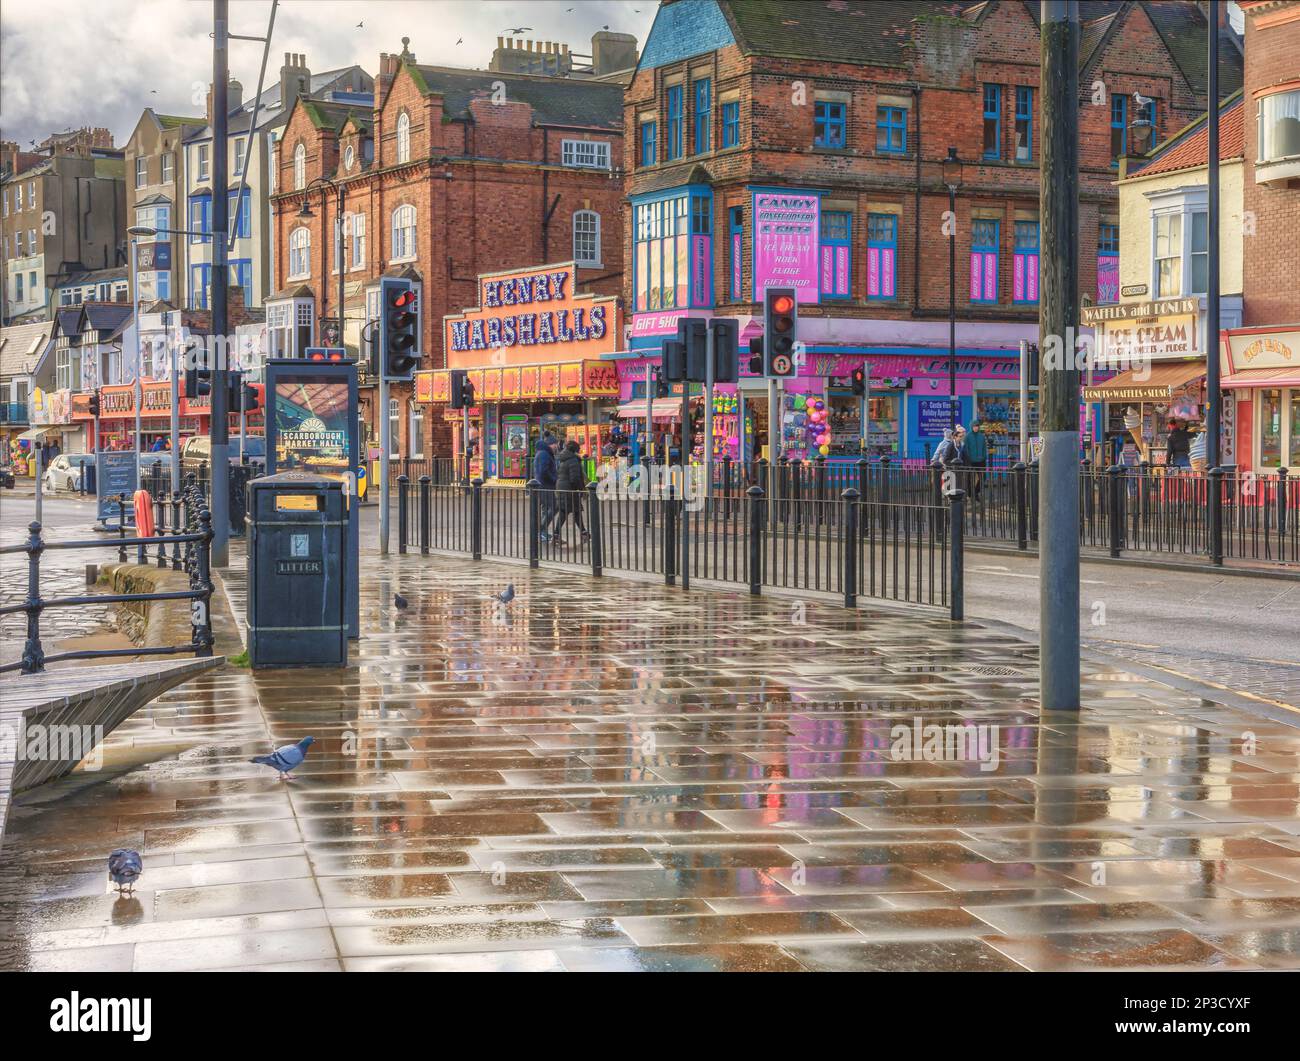 Eine Regendusche hinterlässt einen nassen Bürgersteig mit Reflexionen. Tauben stehen im Vordergrund und die Straße ist von Geschäften und Vergnügungsparks gesäumt. Stockfoto